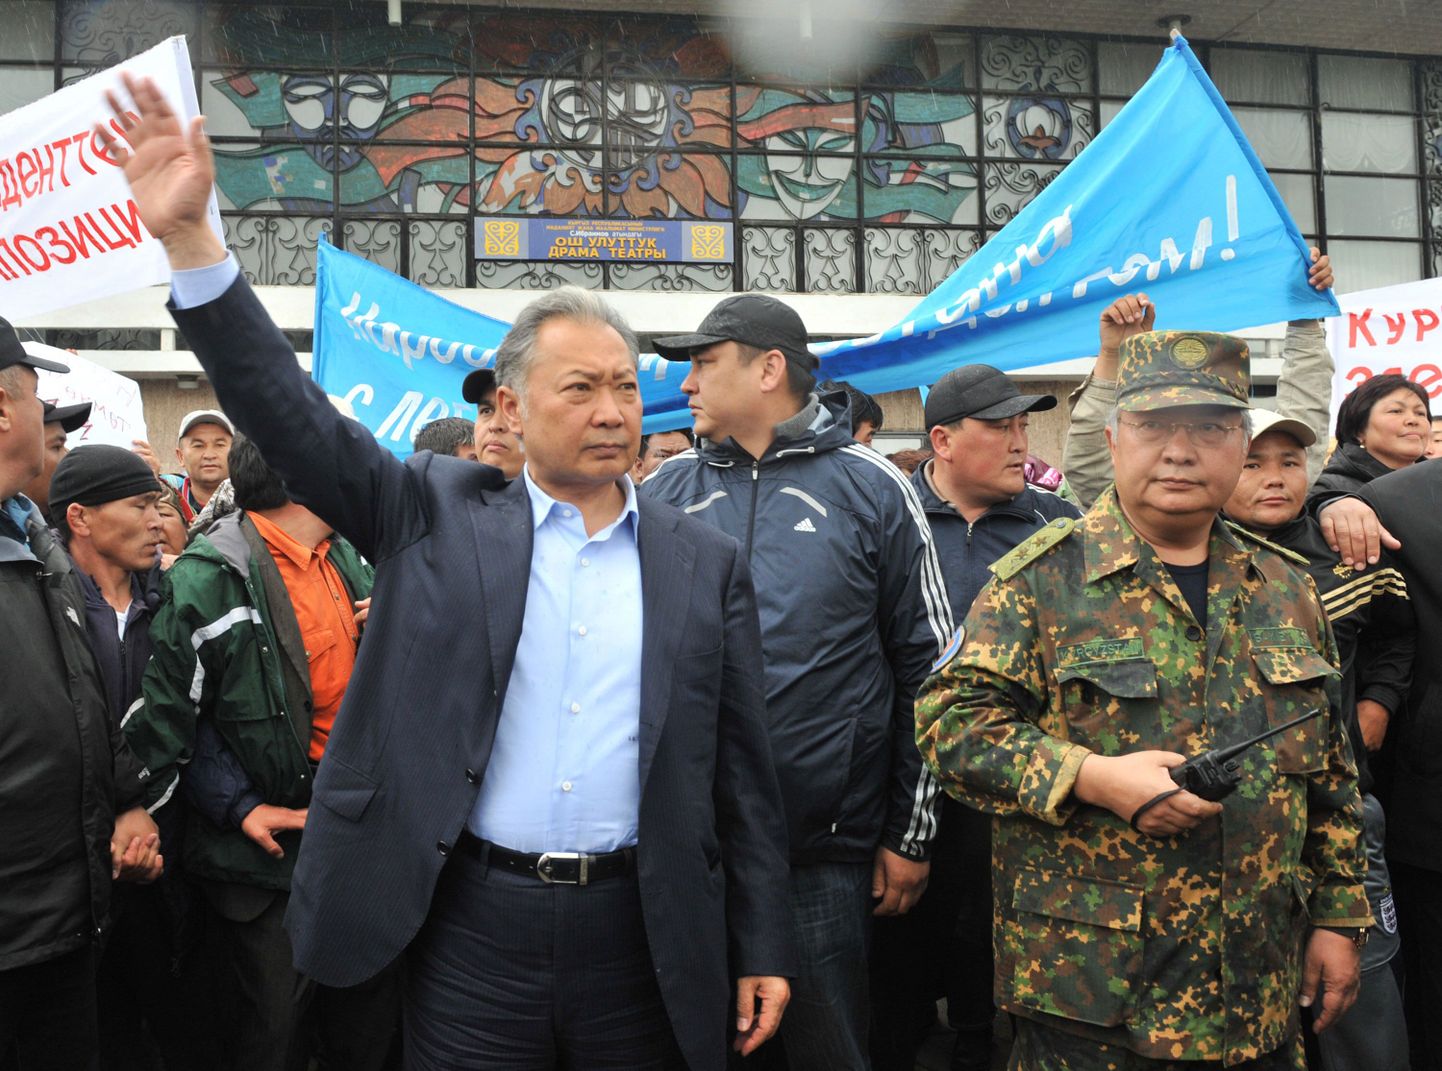 Курманбек Бакиев на митинге своих сторонников в городе Ош (15 апреля). Справа - его брат, Ахмат.